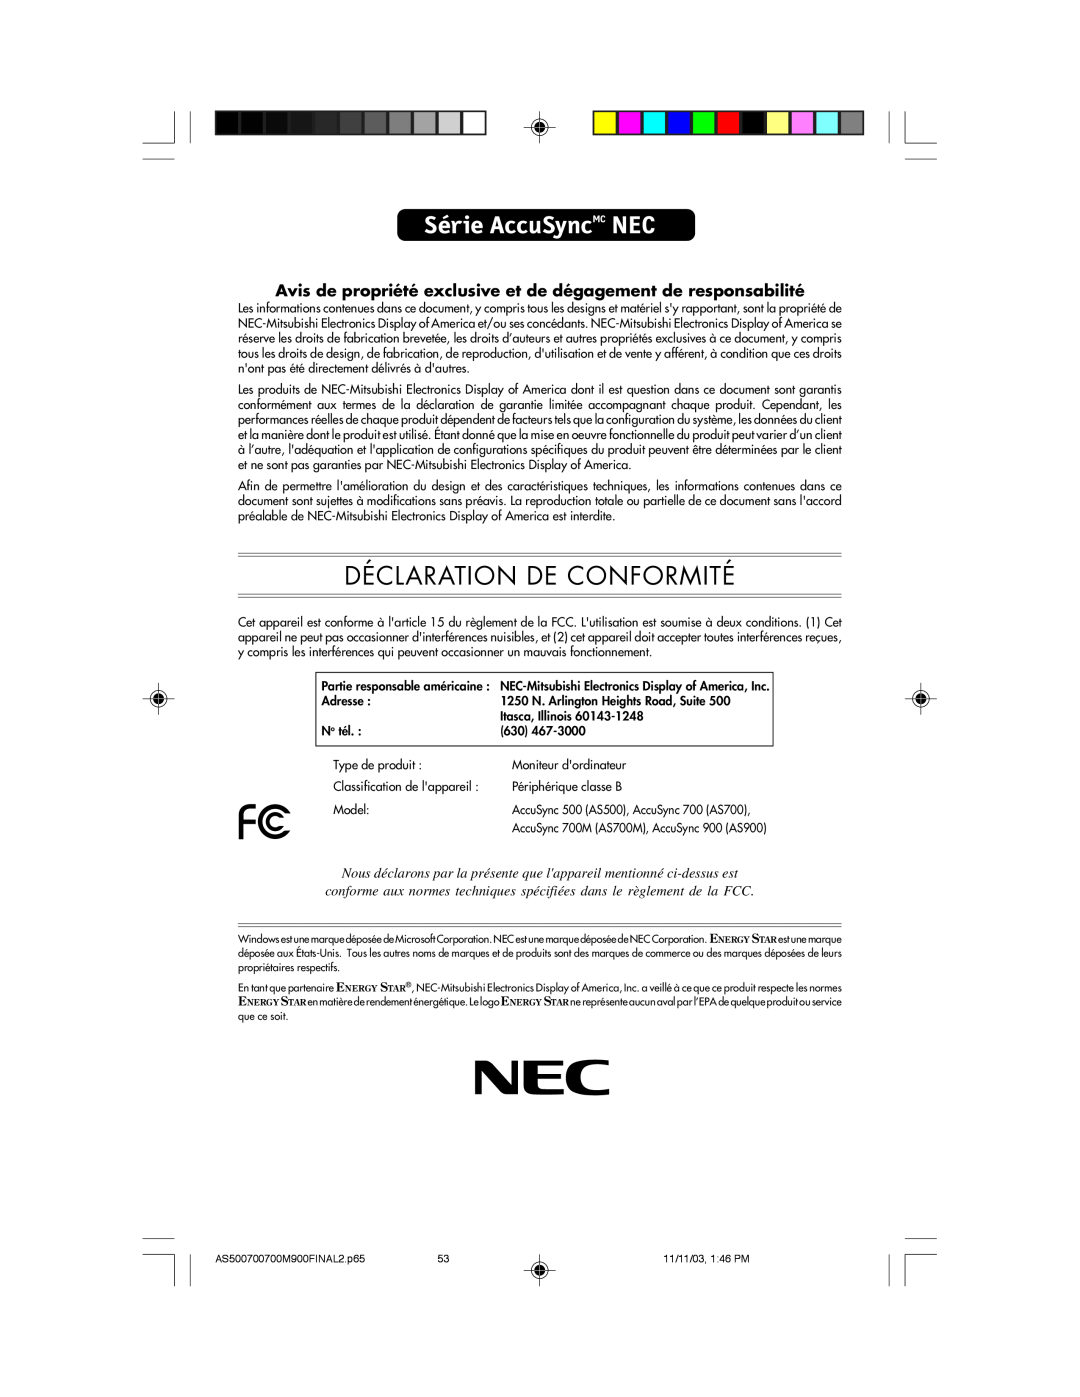 NEC 500, 700, 700M, 900 manual Série AccuSyncMC NEC, Déclaration De Conformité 